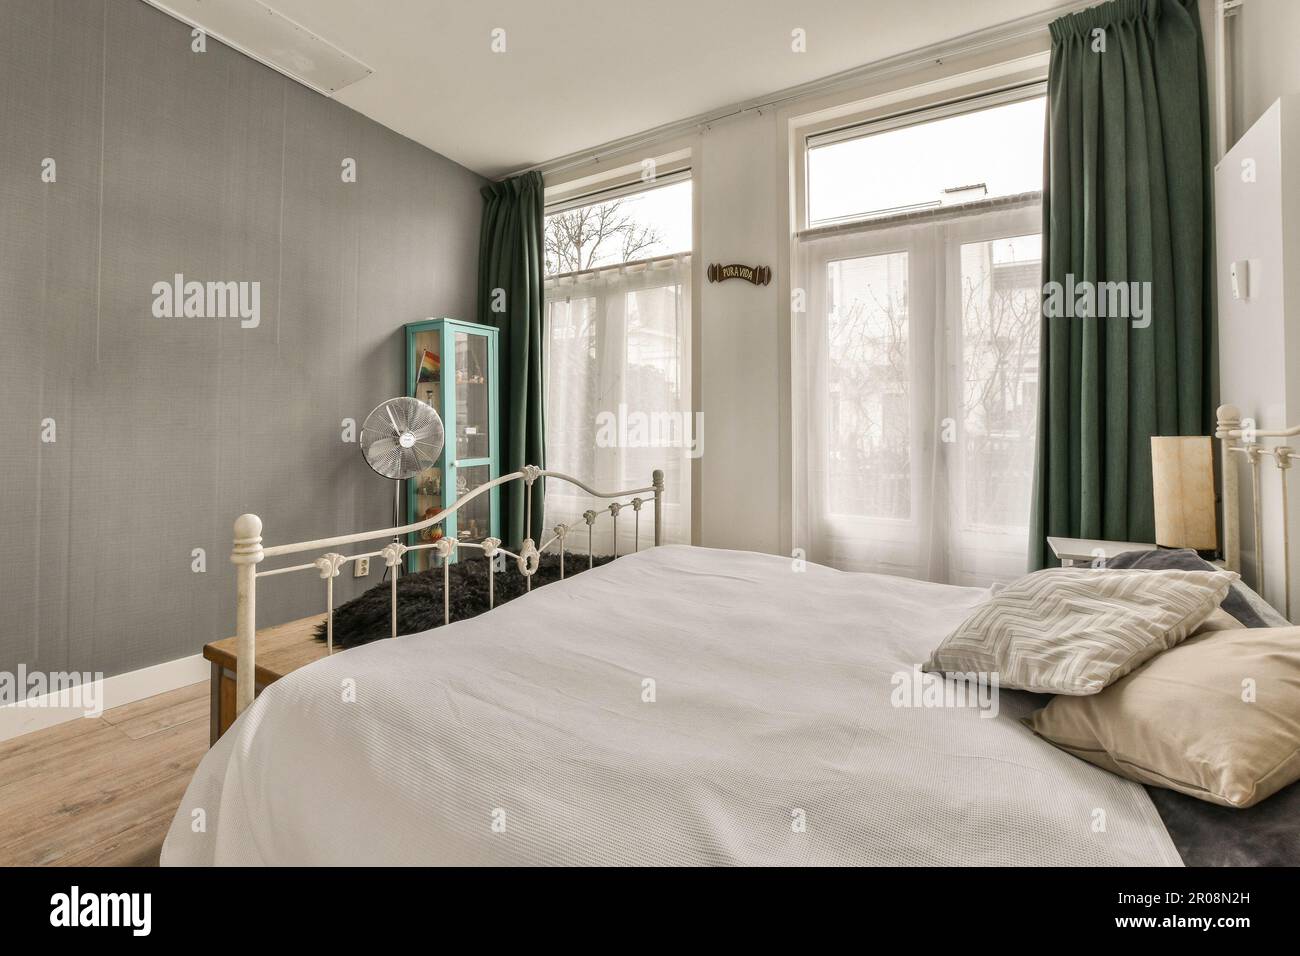 Un dormitorio con paredes blancas y cortinas verdes en los marcos